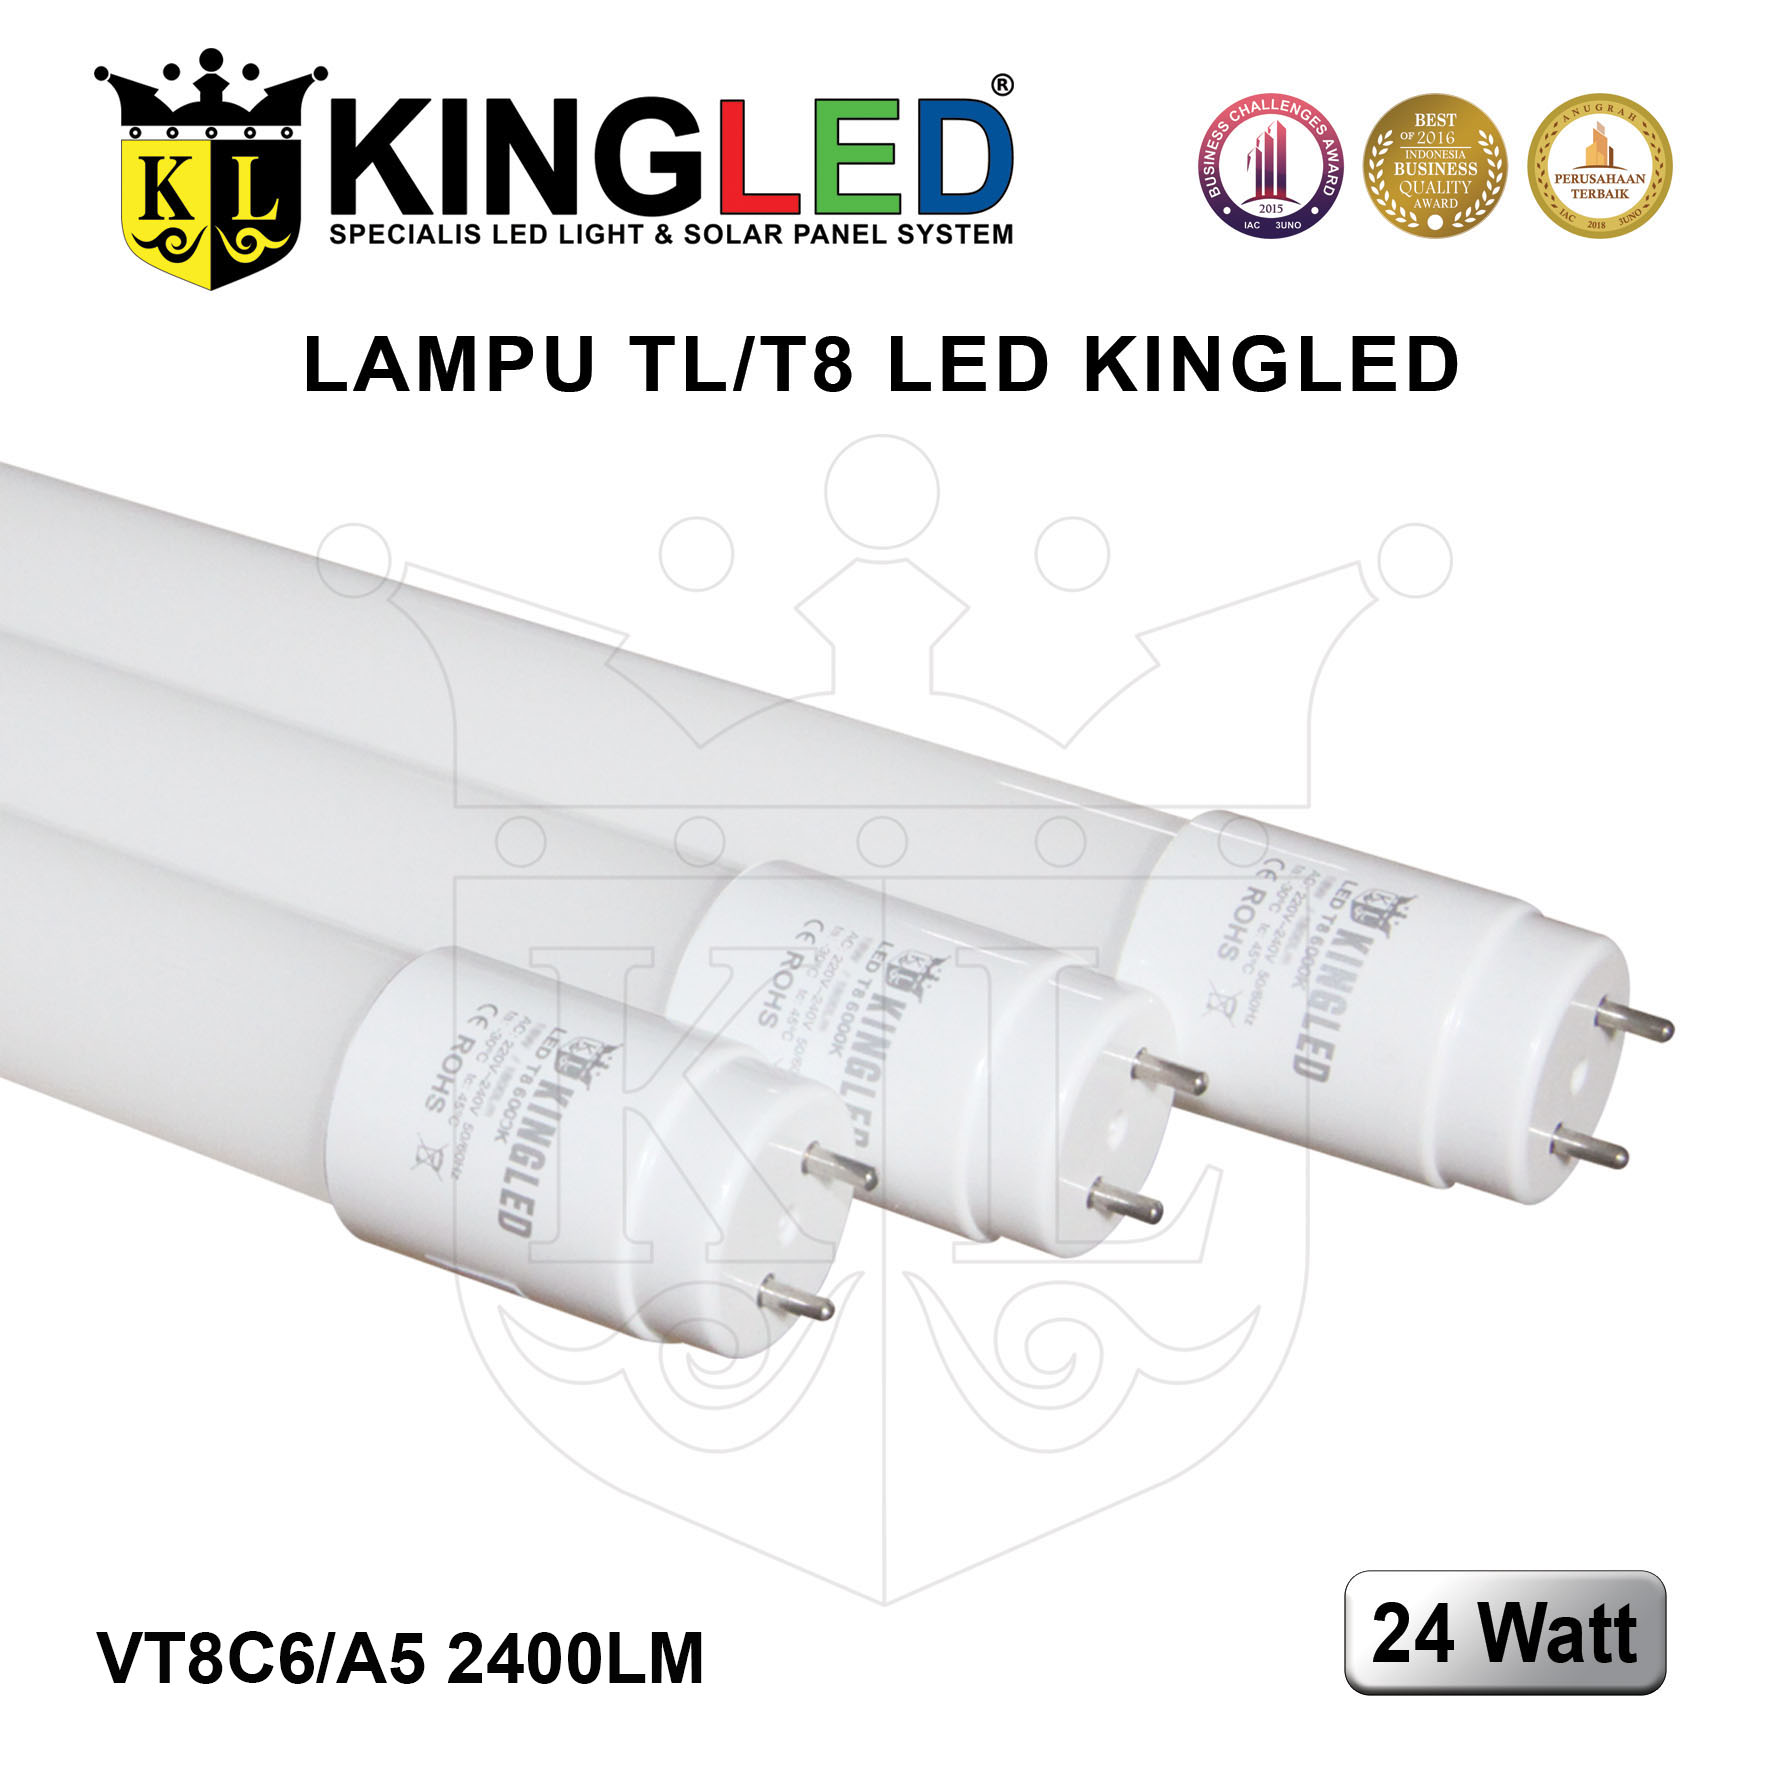 Lampu TL T8 LED 24 Watt / Tube T8 LED 24 Watt